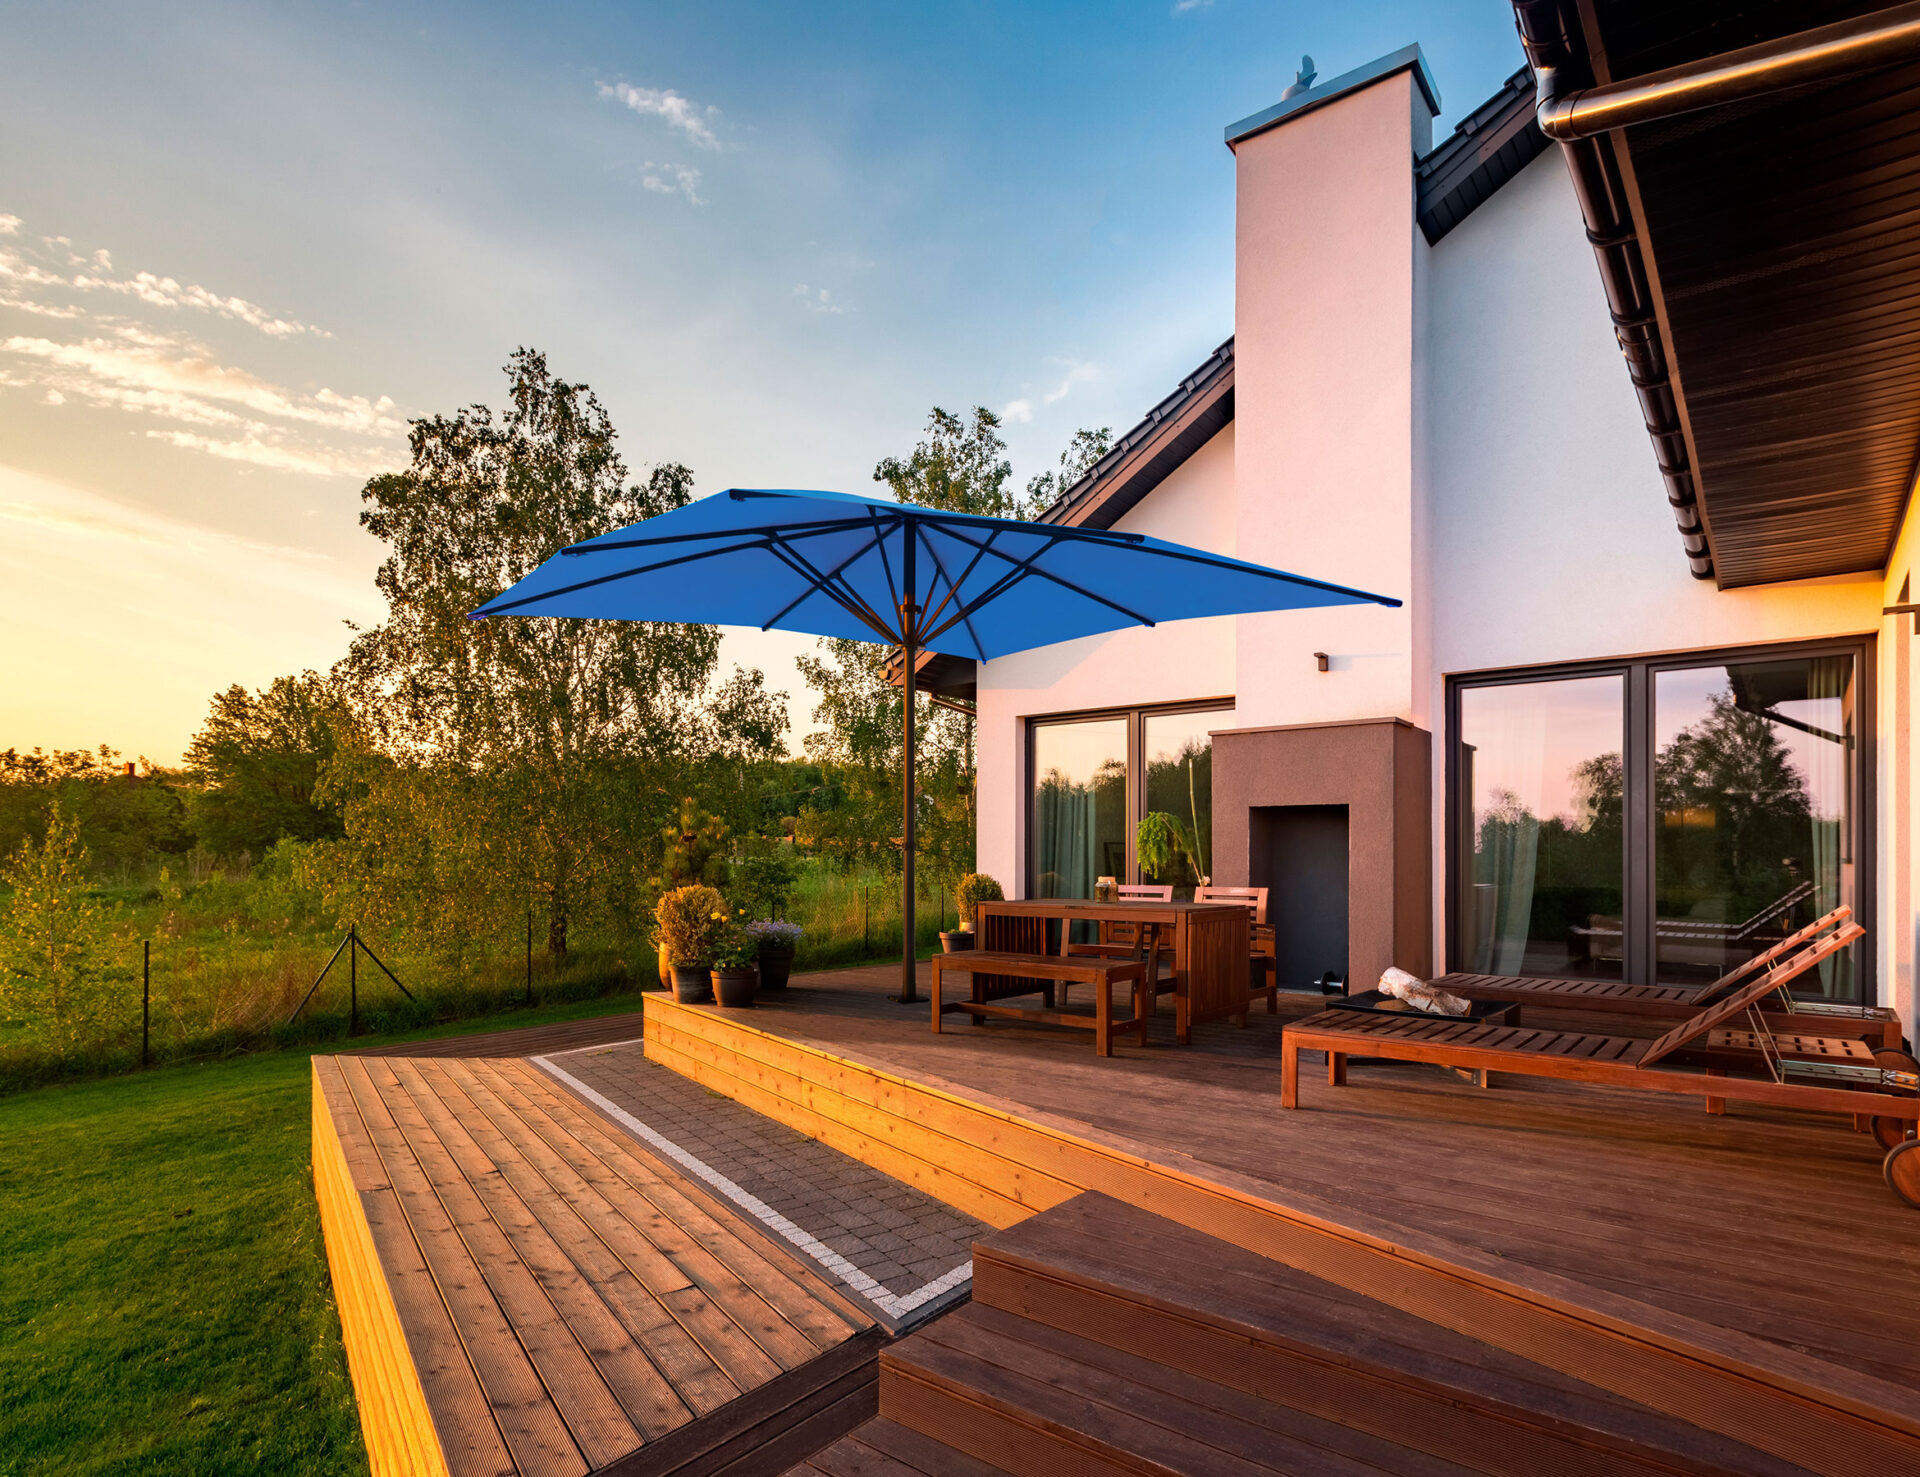 Baham Pure Sonnenschirm auf einer Terrasse eines Hauses mit Einfamilienhauses, mit Blick in die Natur.